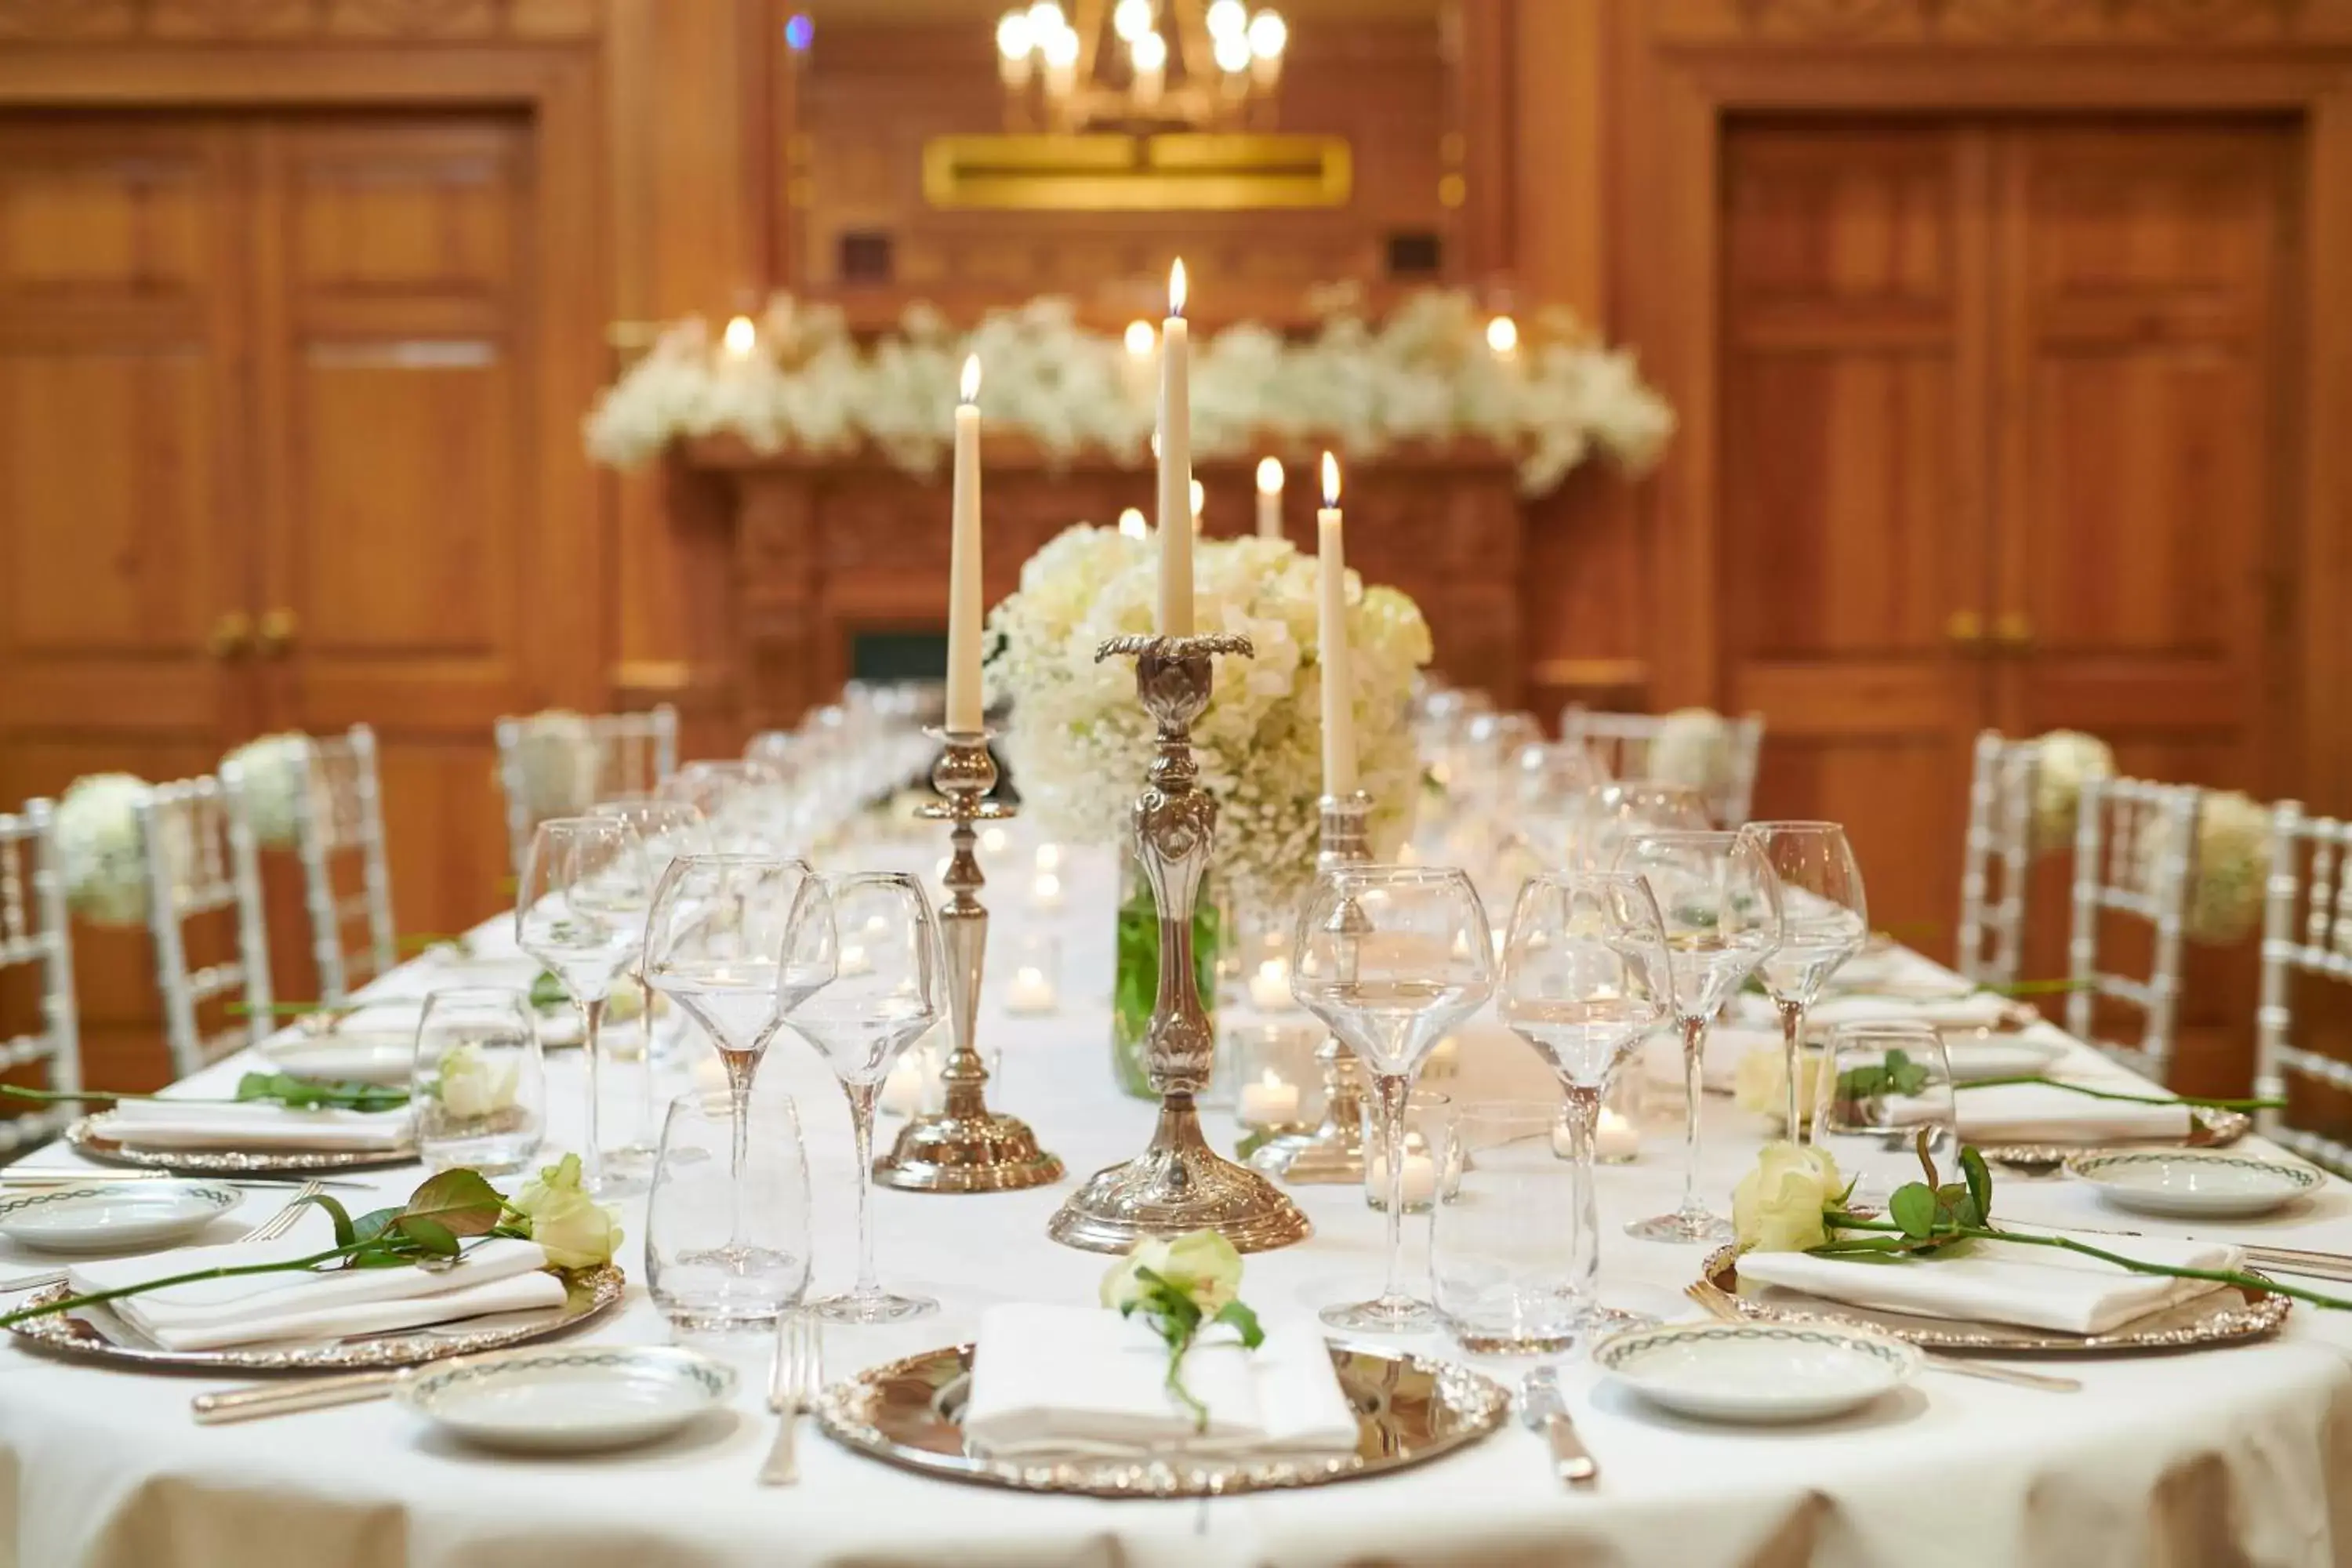 Banquet/Function facilities, Banquet Facilities in Milestone Hotel Kensington